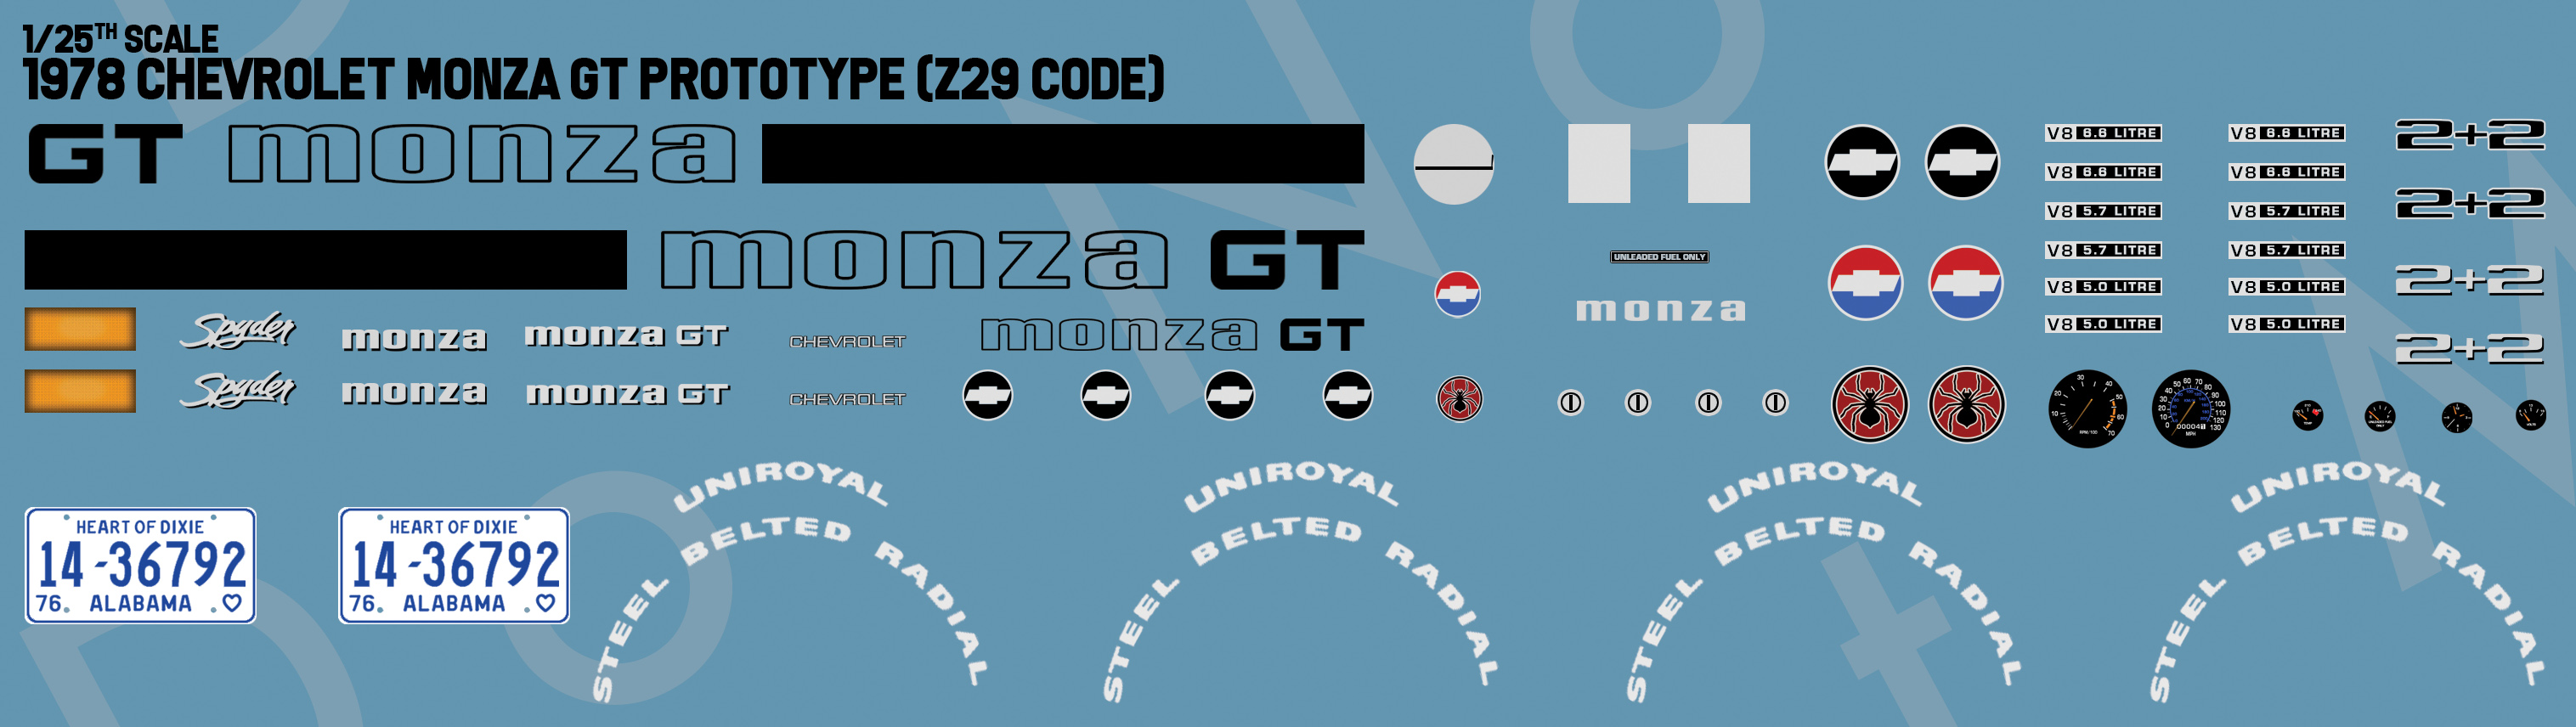 1978 Chevrolet Monza GT Prototype(Z29 code)